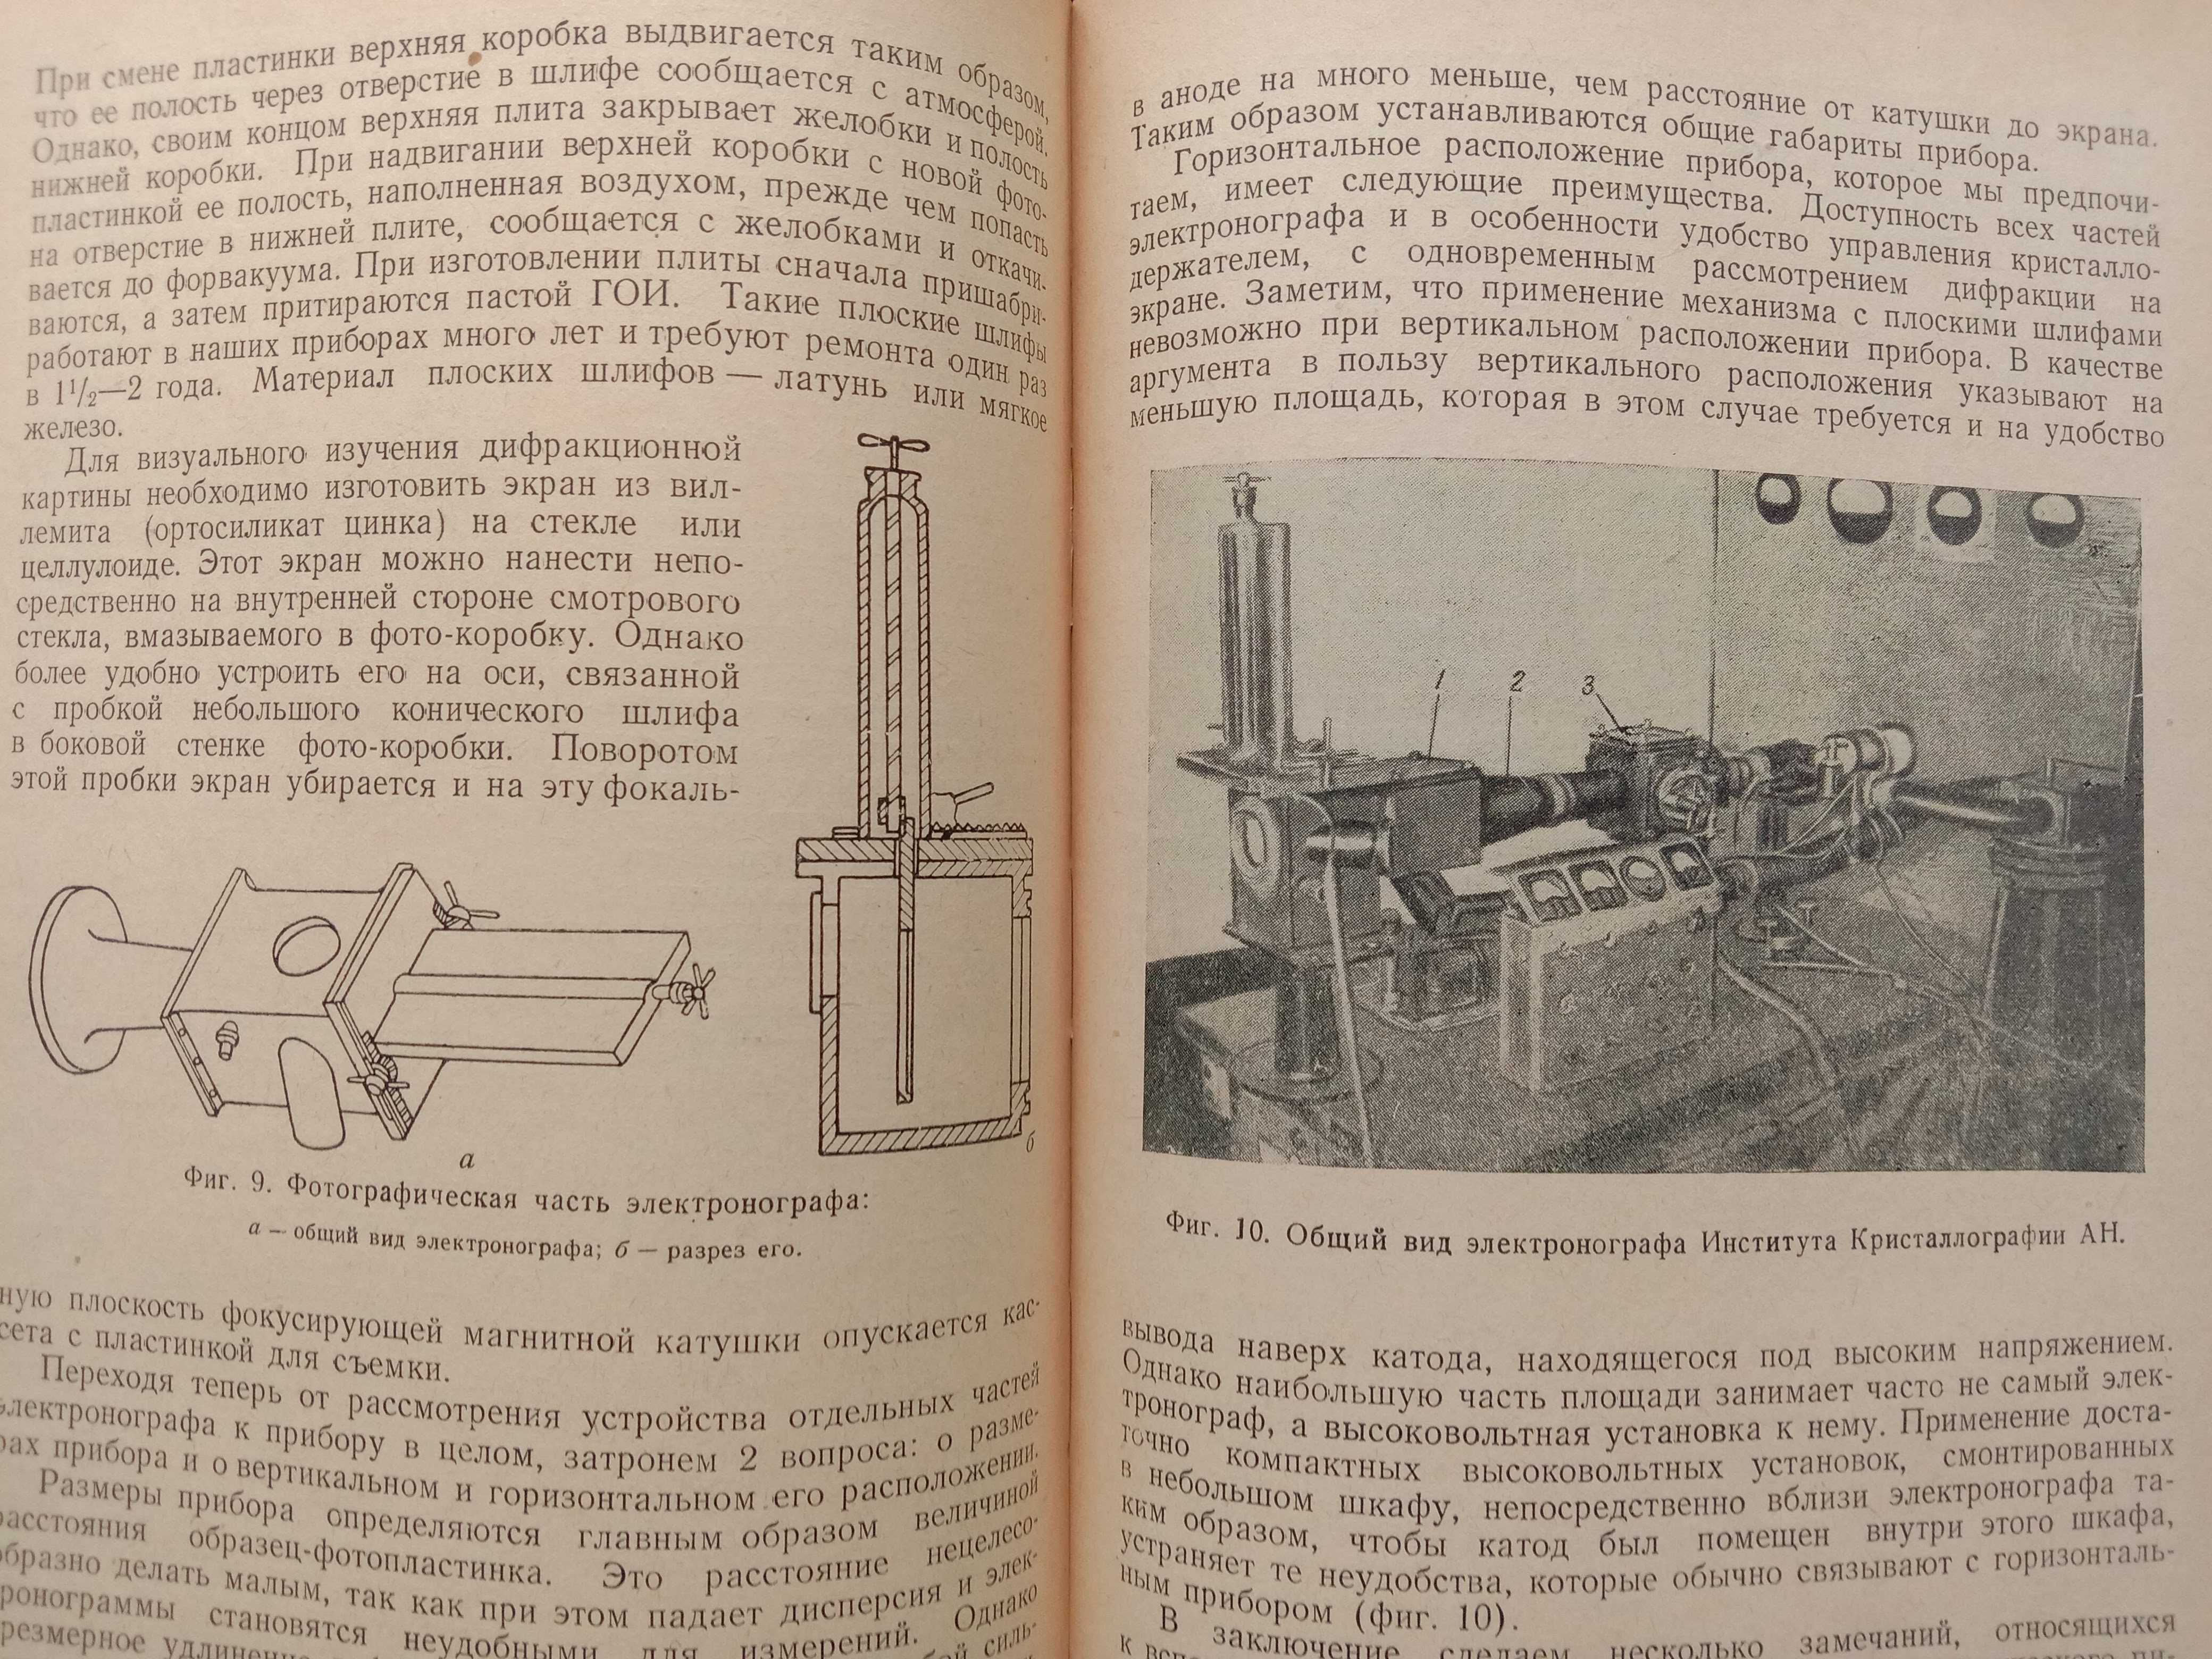 Применение рентгеновских лучей к исследованию материалов. 1949 г